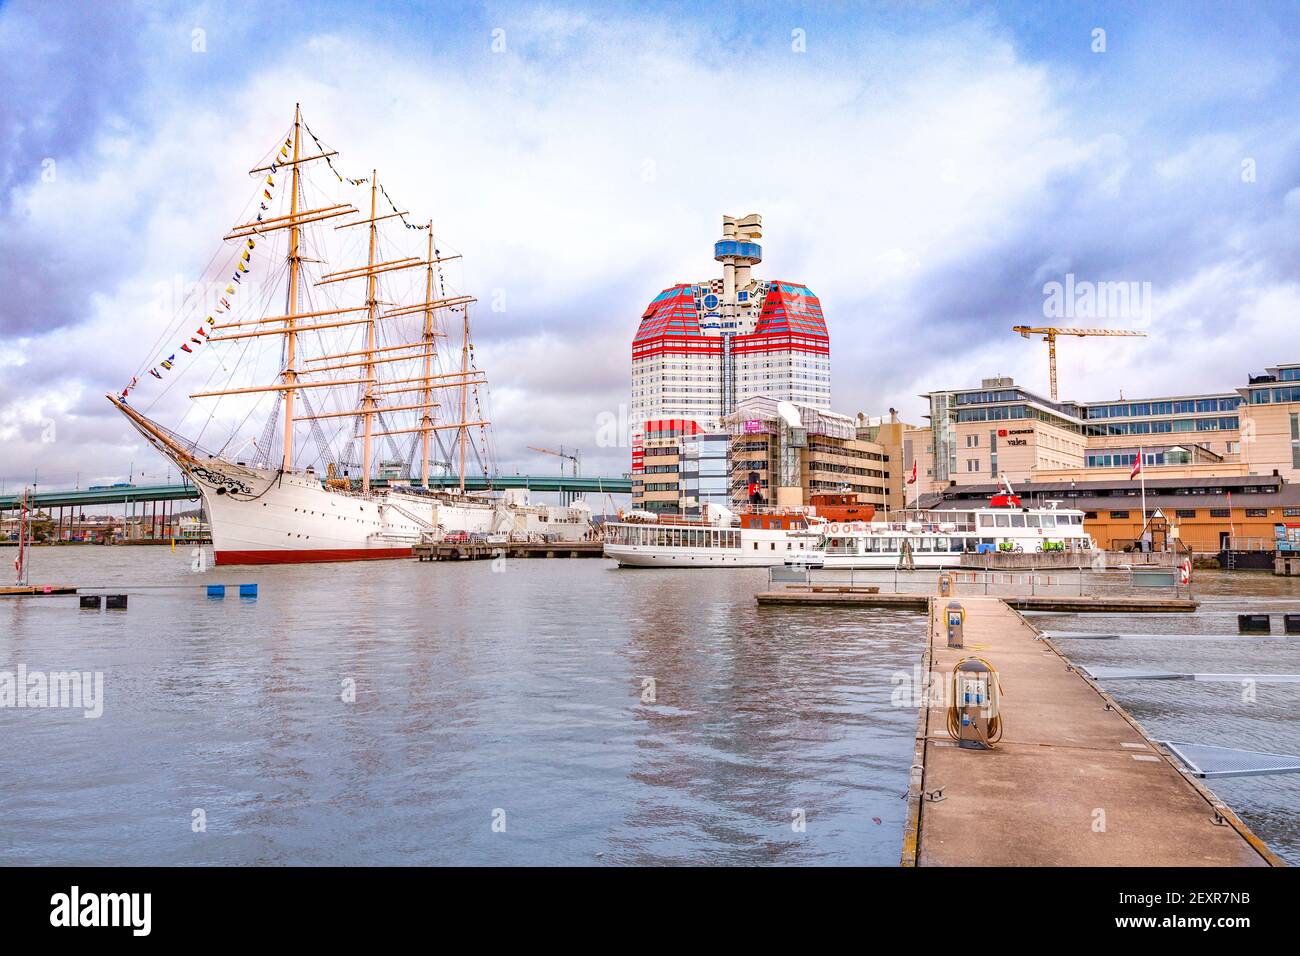 14 septembre 2019 : Göteborg, Suède - Lilla Bommens Torg, avec vue sur la place Viking au port. Banque D'Images